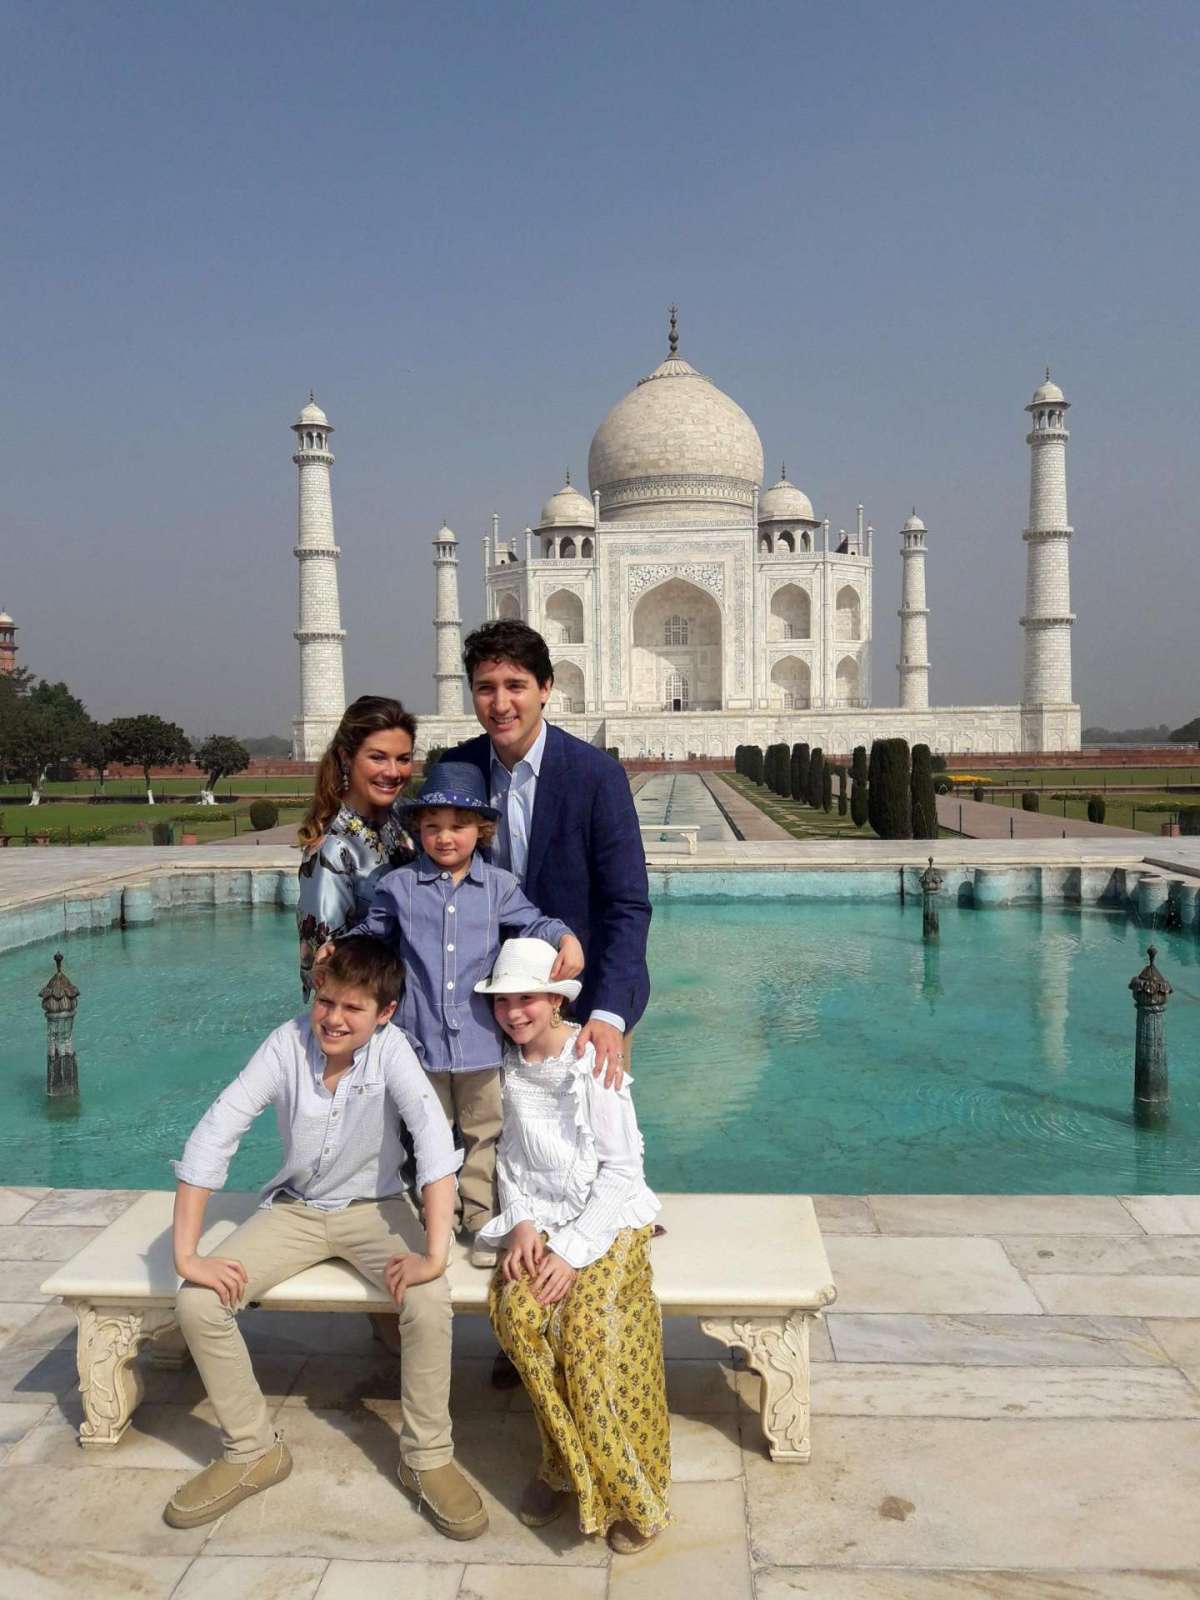 Ricordi di famiglia per i Trudeau: scatti dal Taj Mahal